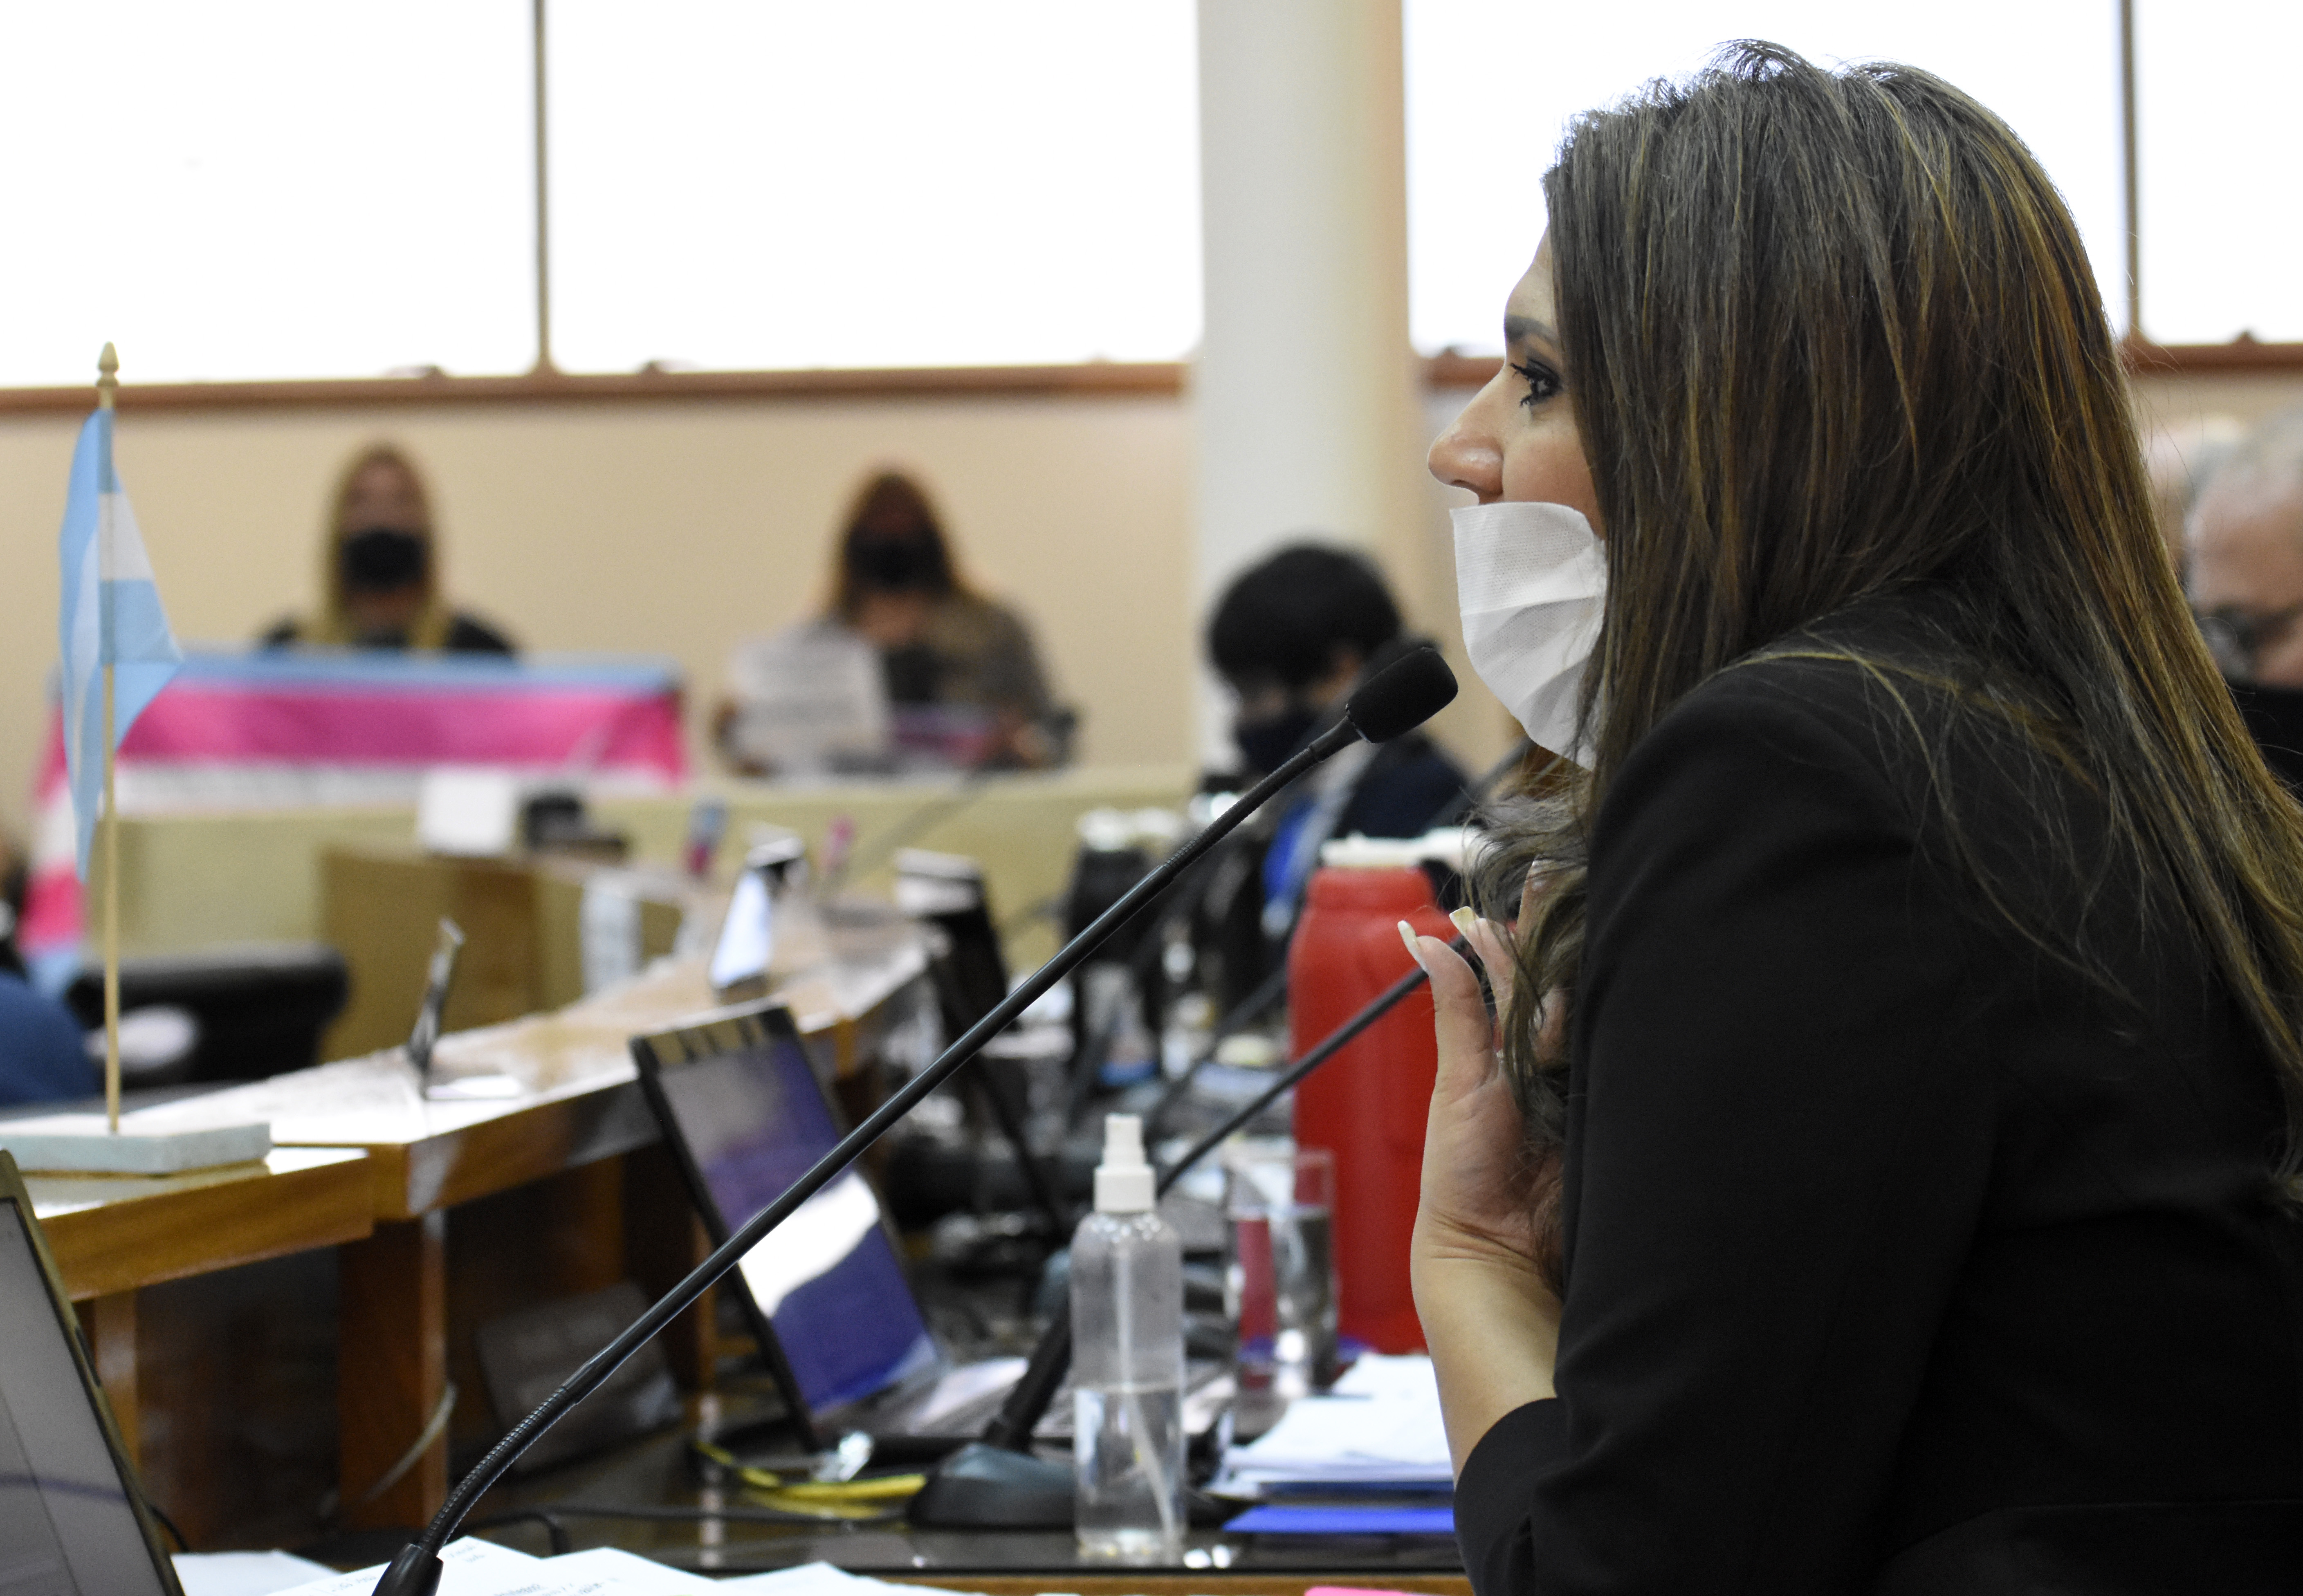 La concejal Nadia Márquez analiza pedir la inconstitucionalidad de la ordenanza sancionada (foto Florencia Salto)